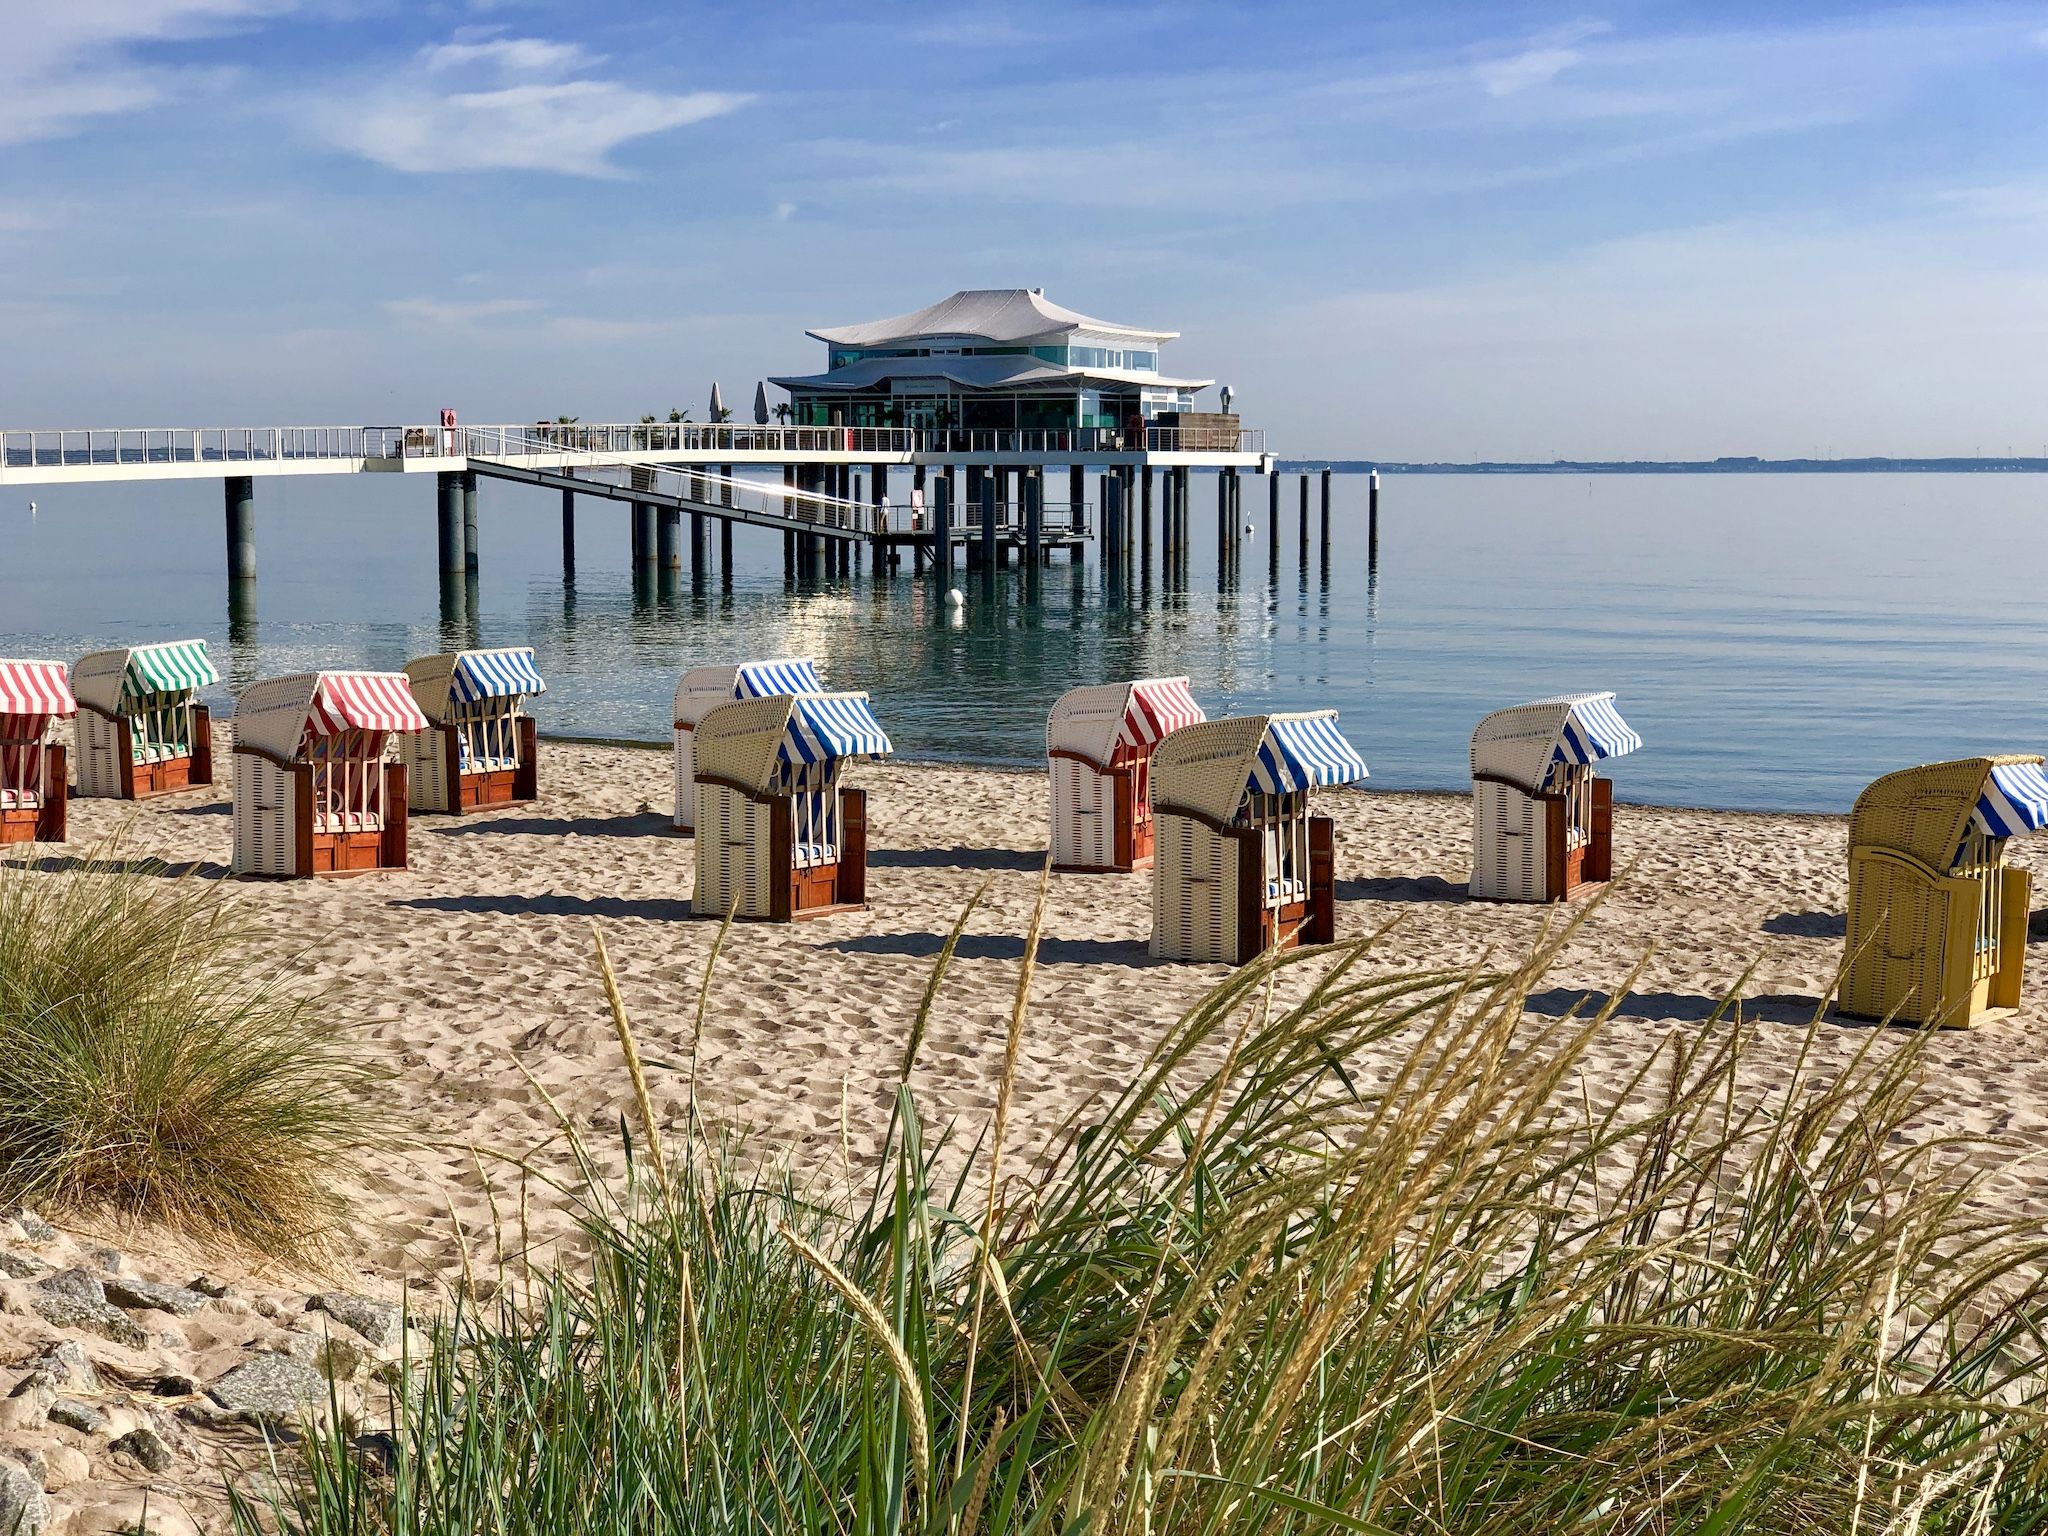 Uitzicht op de Timmendorfer Strand-pier: veel vakantiegangers kijken uit naar een vakantie aan zee. Foto: Sascha Tegtmeyer